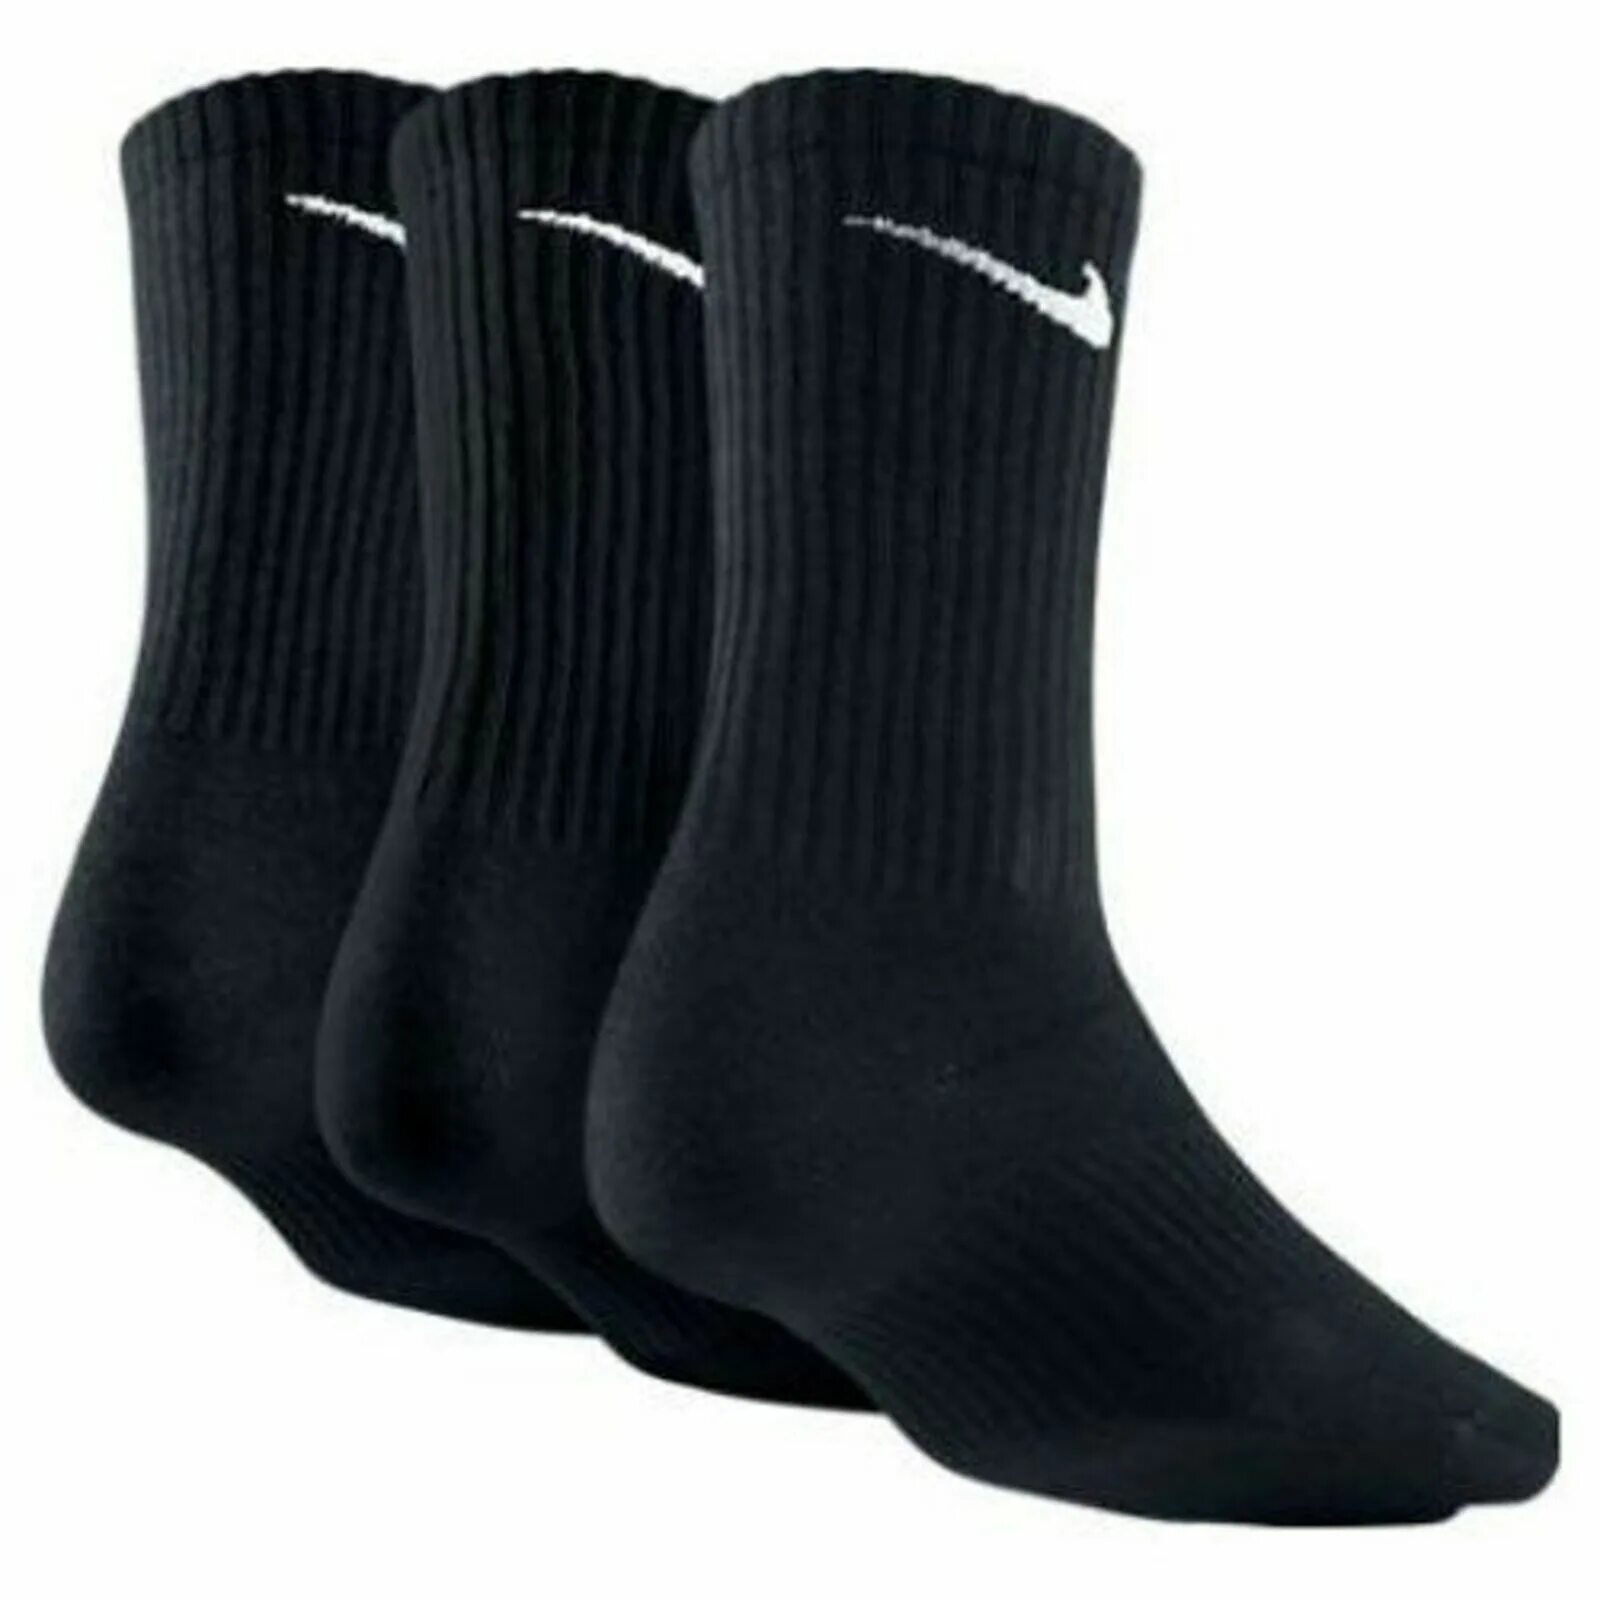 Черные носки найк. Nike Lightweight Crew. Носки найк. Носки найк черные. Носки для футбола найк.